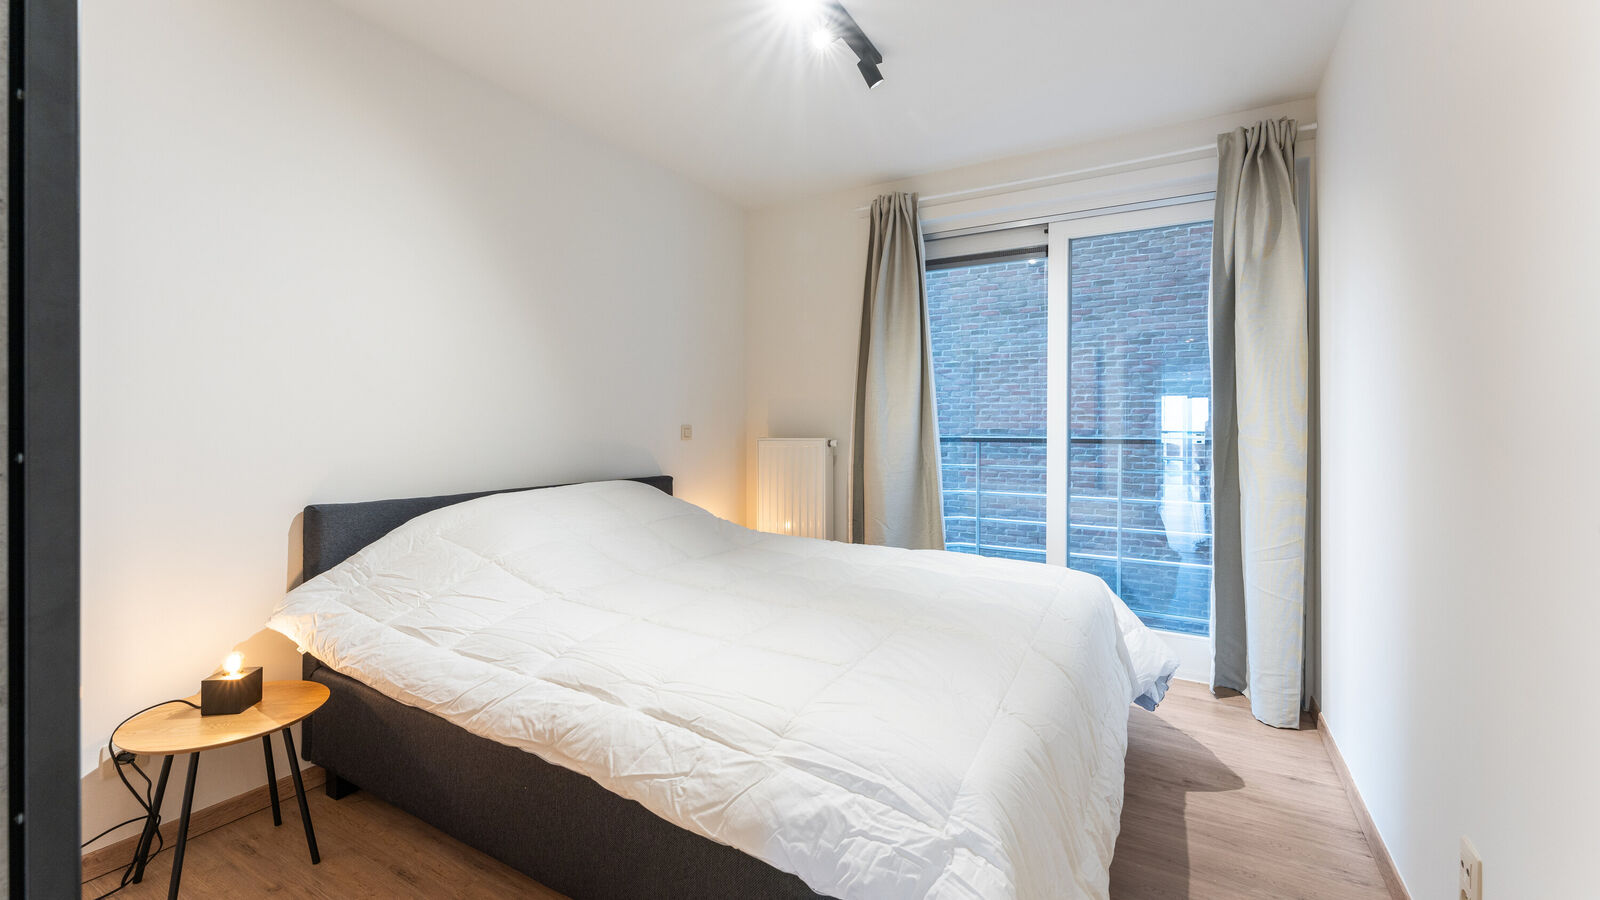 App. 2 bedrooms in De Panne